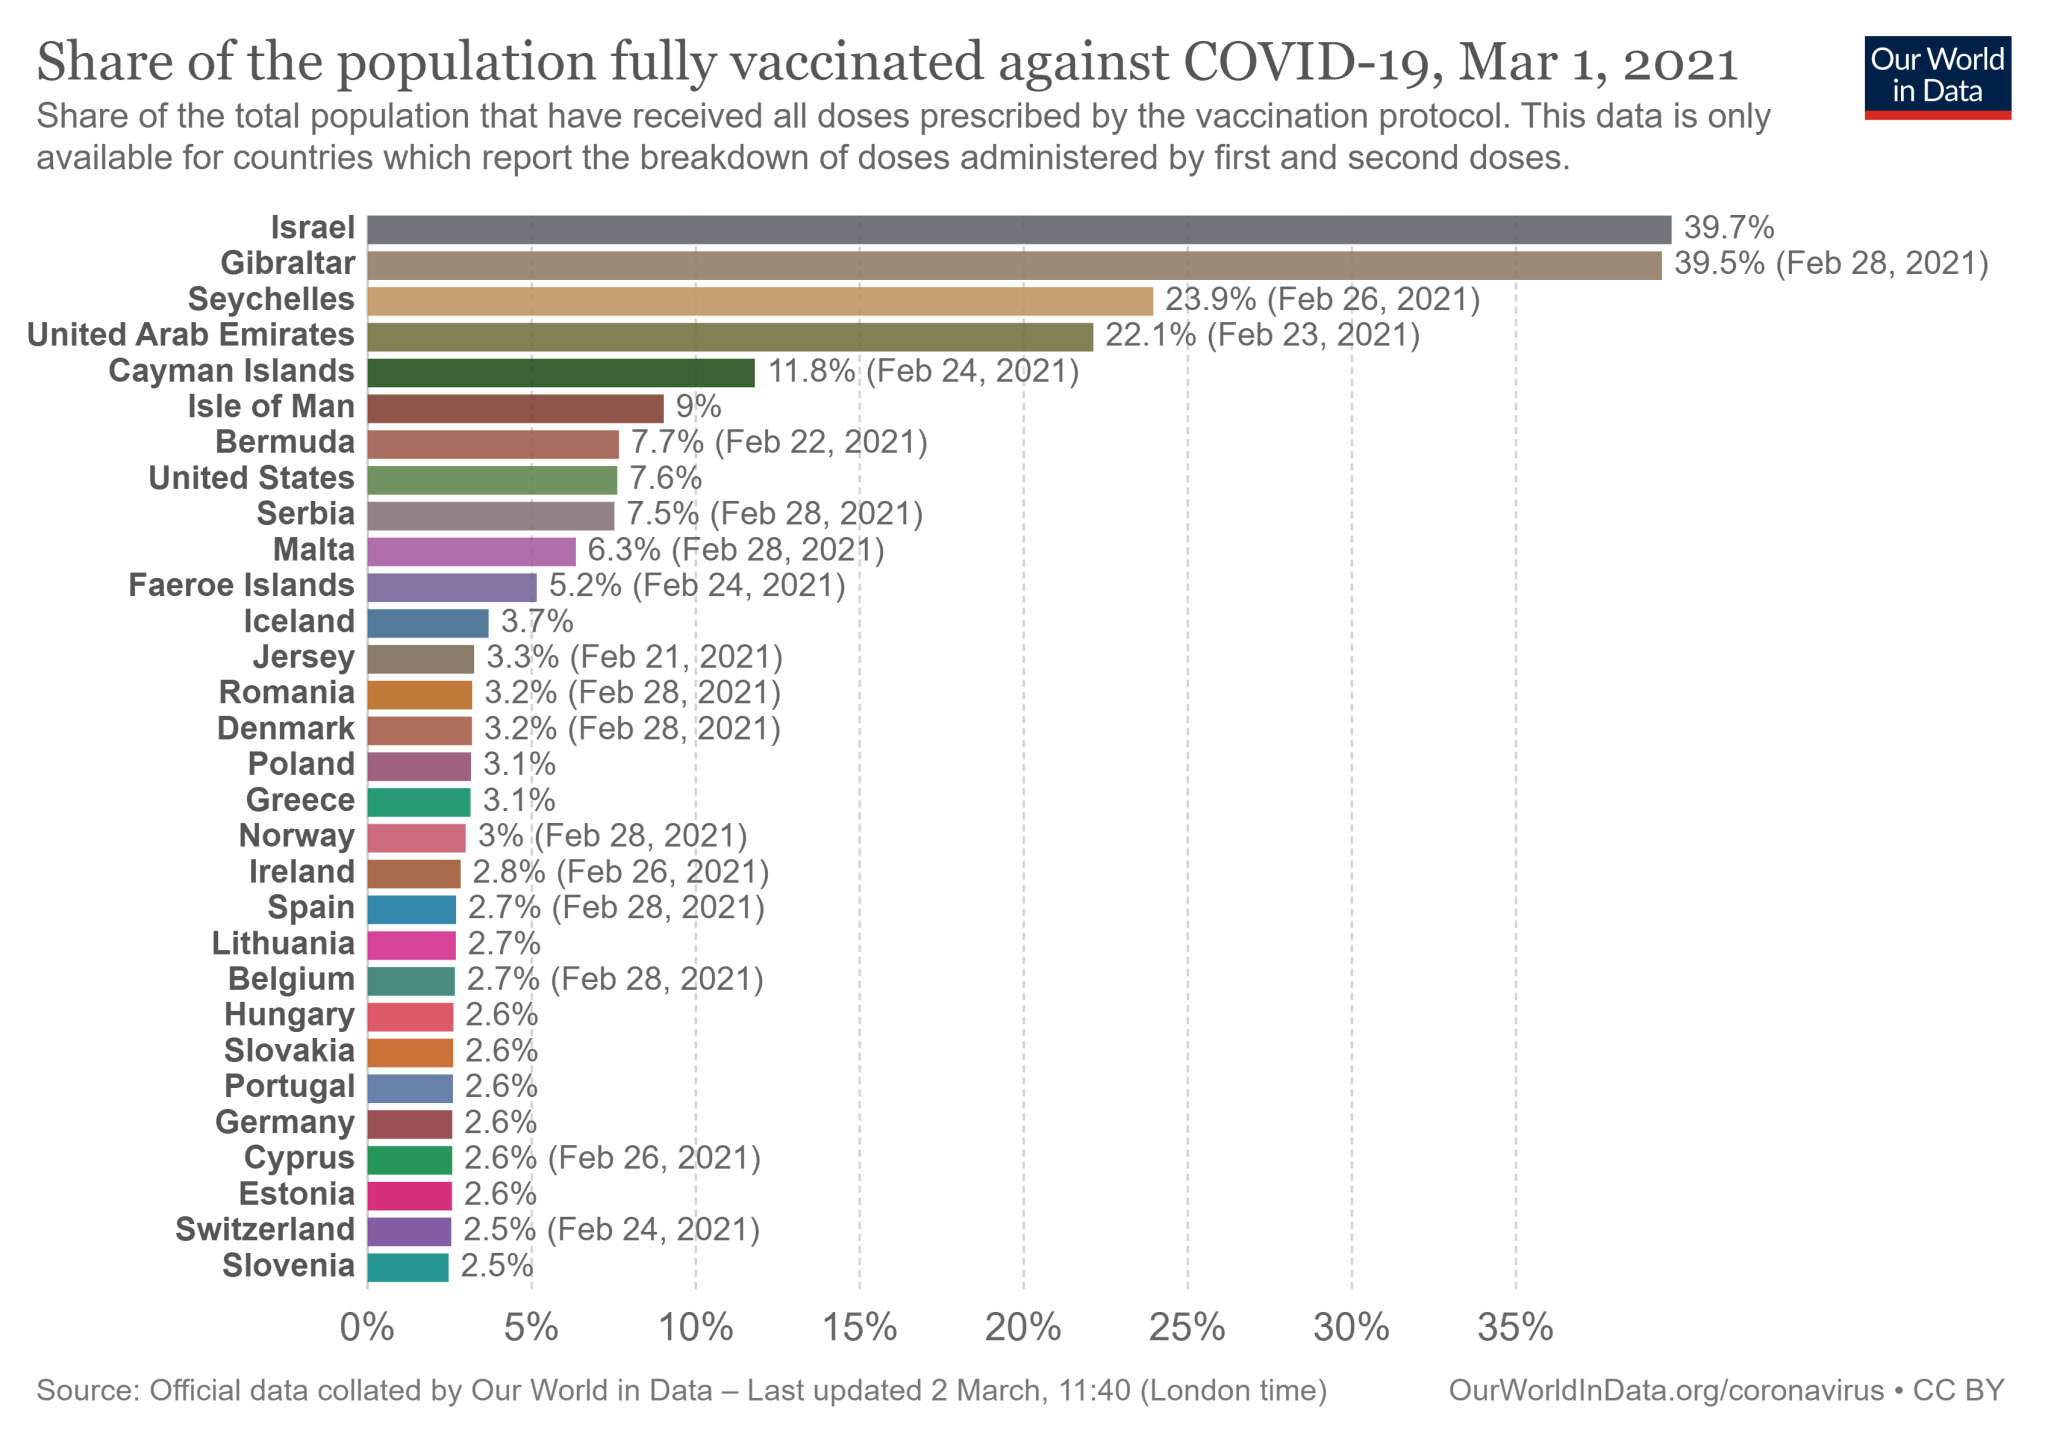 Polska wśród 30 państw z najwyższym odsetkiem obywateli w pełni zaszczepionych przeciw COVID-19 (dane dostępne na 1 marca 2021)